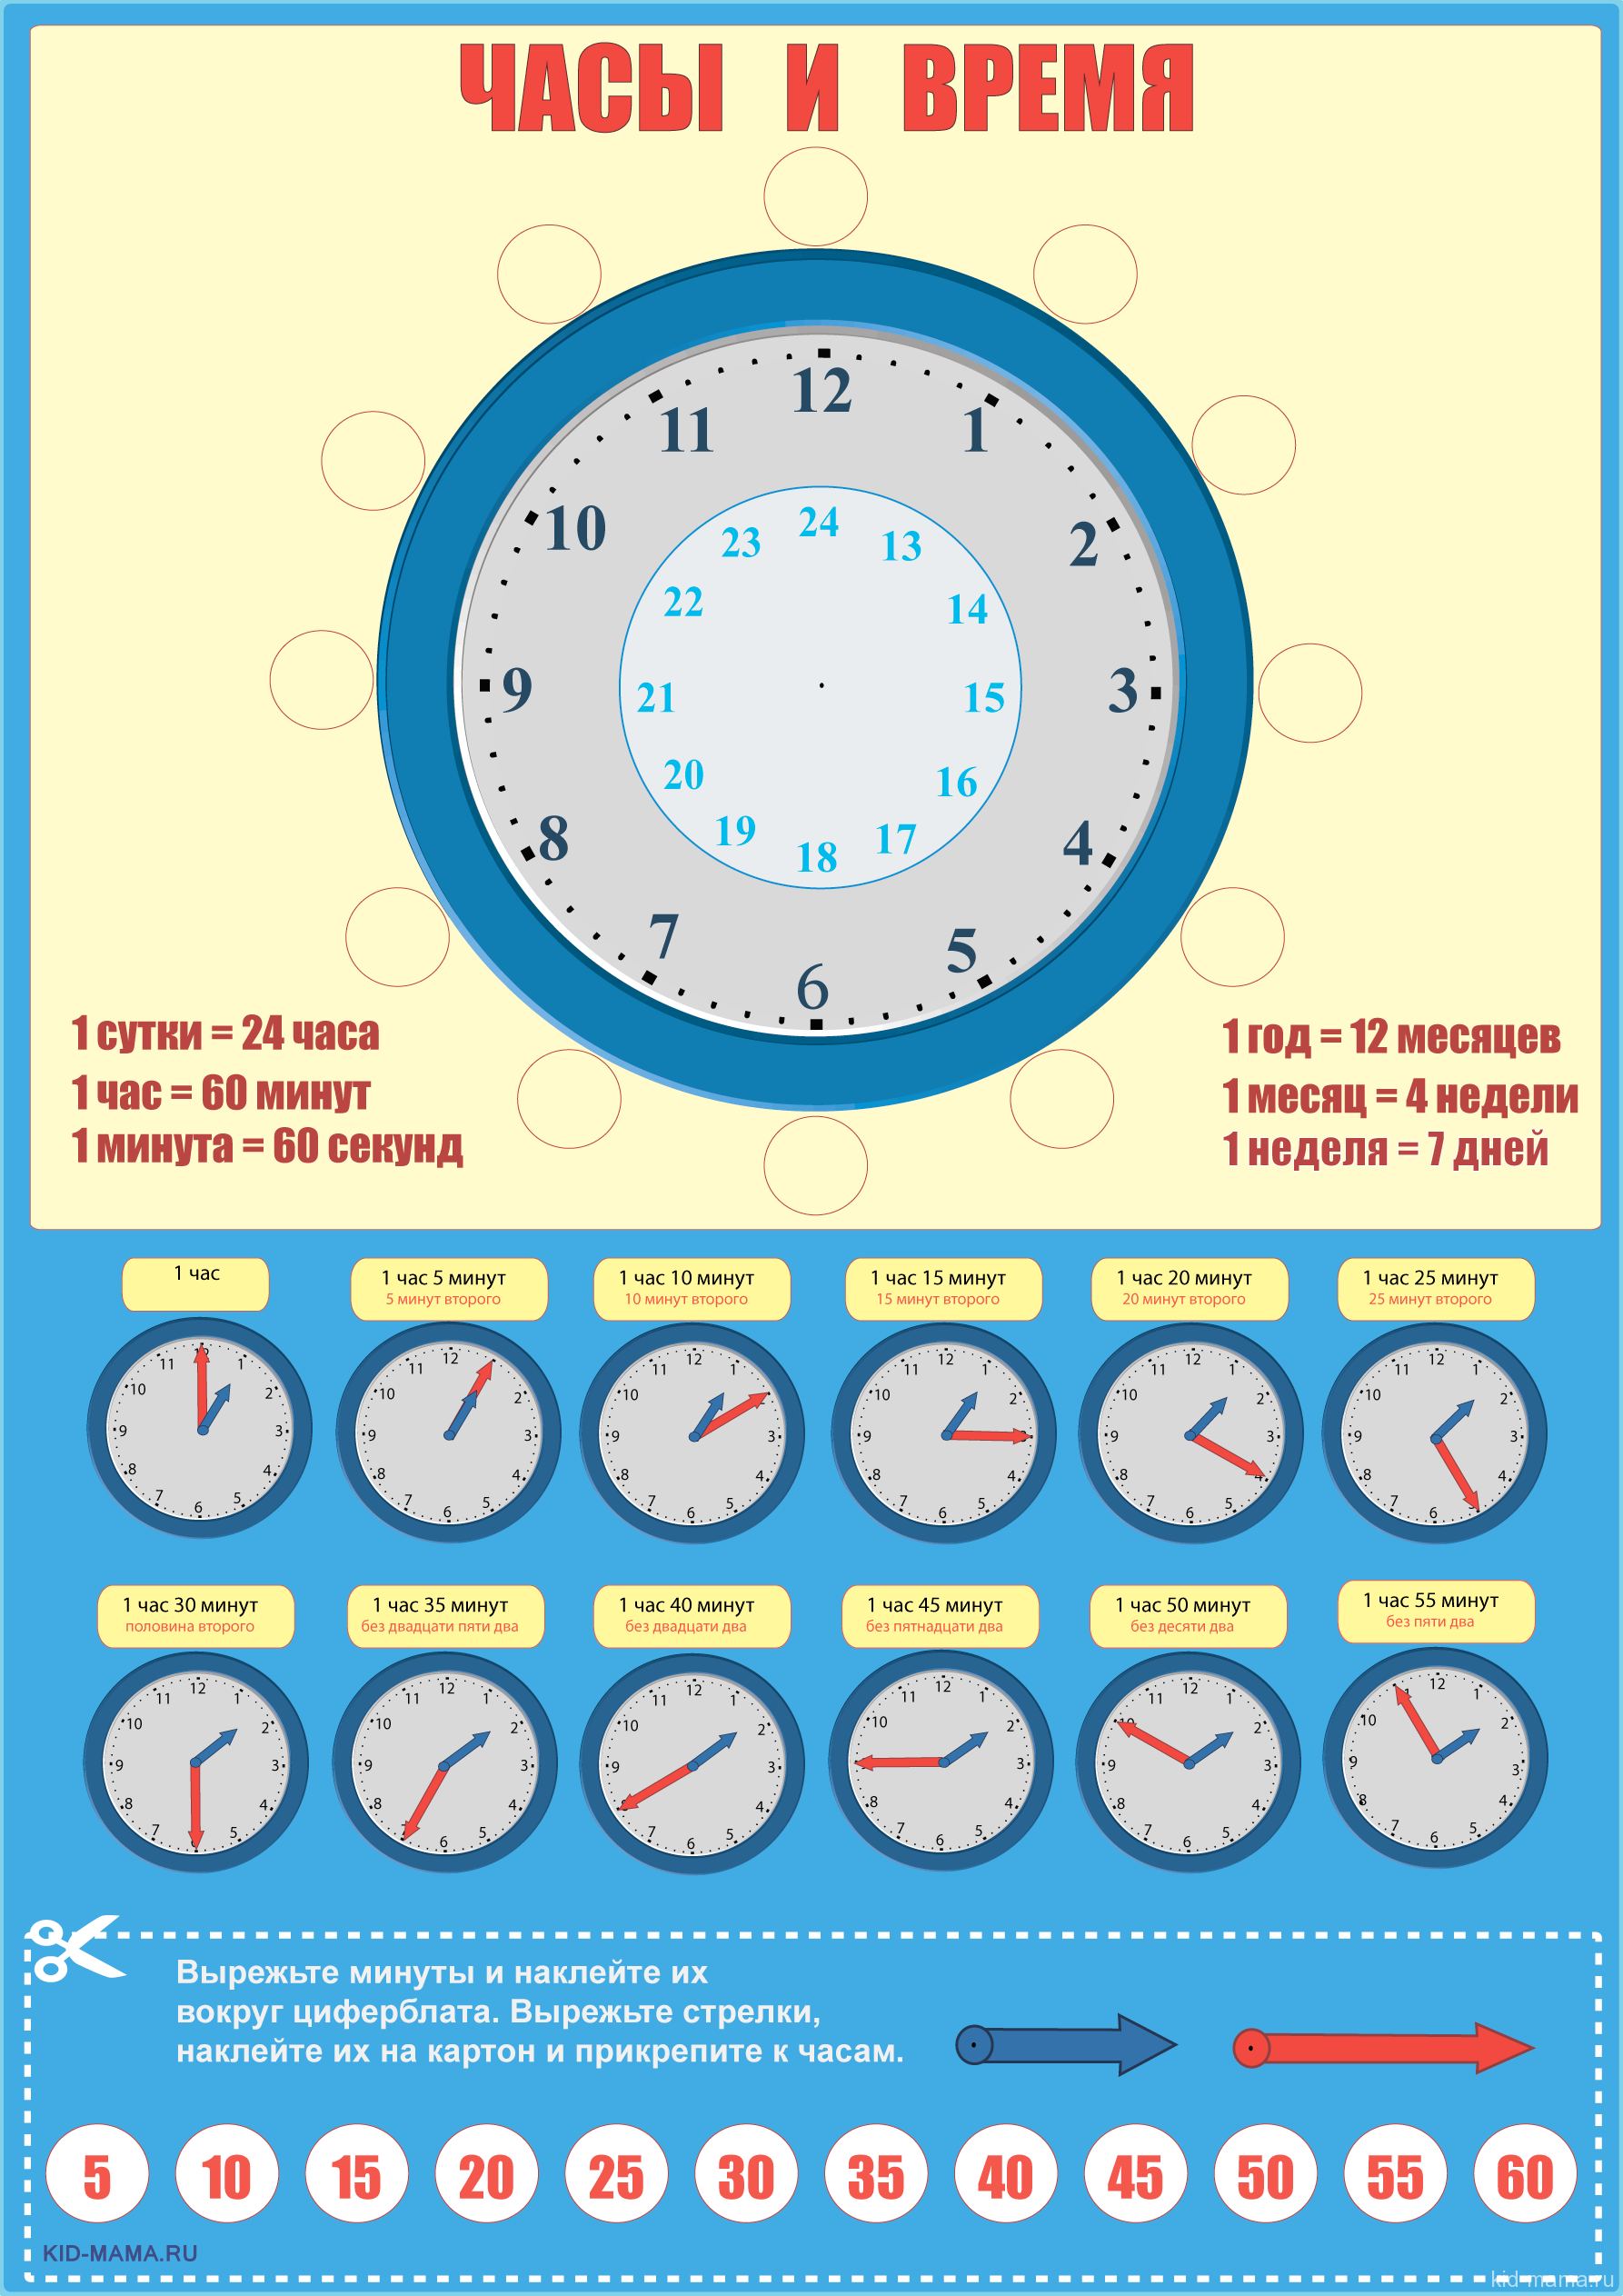 55 минут второго. Как научить ребёнка распознавать время на часах. Как научить ребёнка понимать по часам со стрелками время. Научить ребенка определять время по часам циферблат.